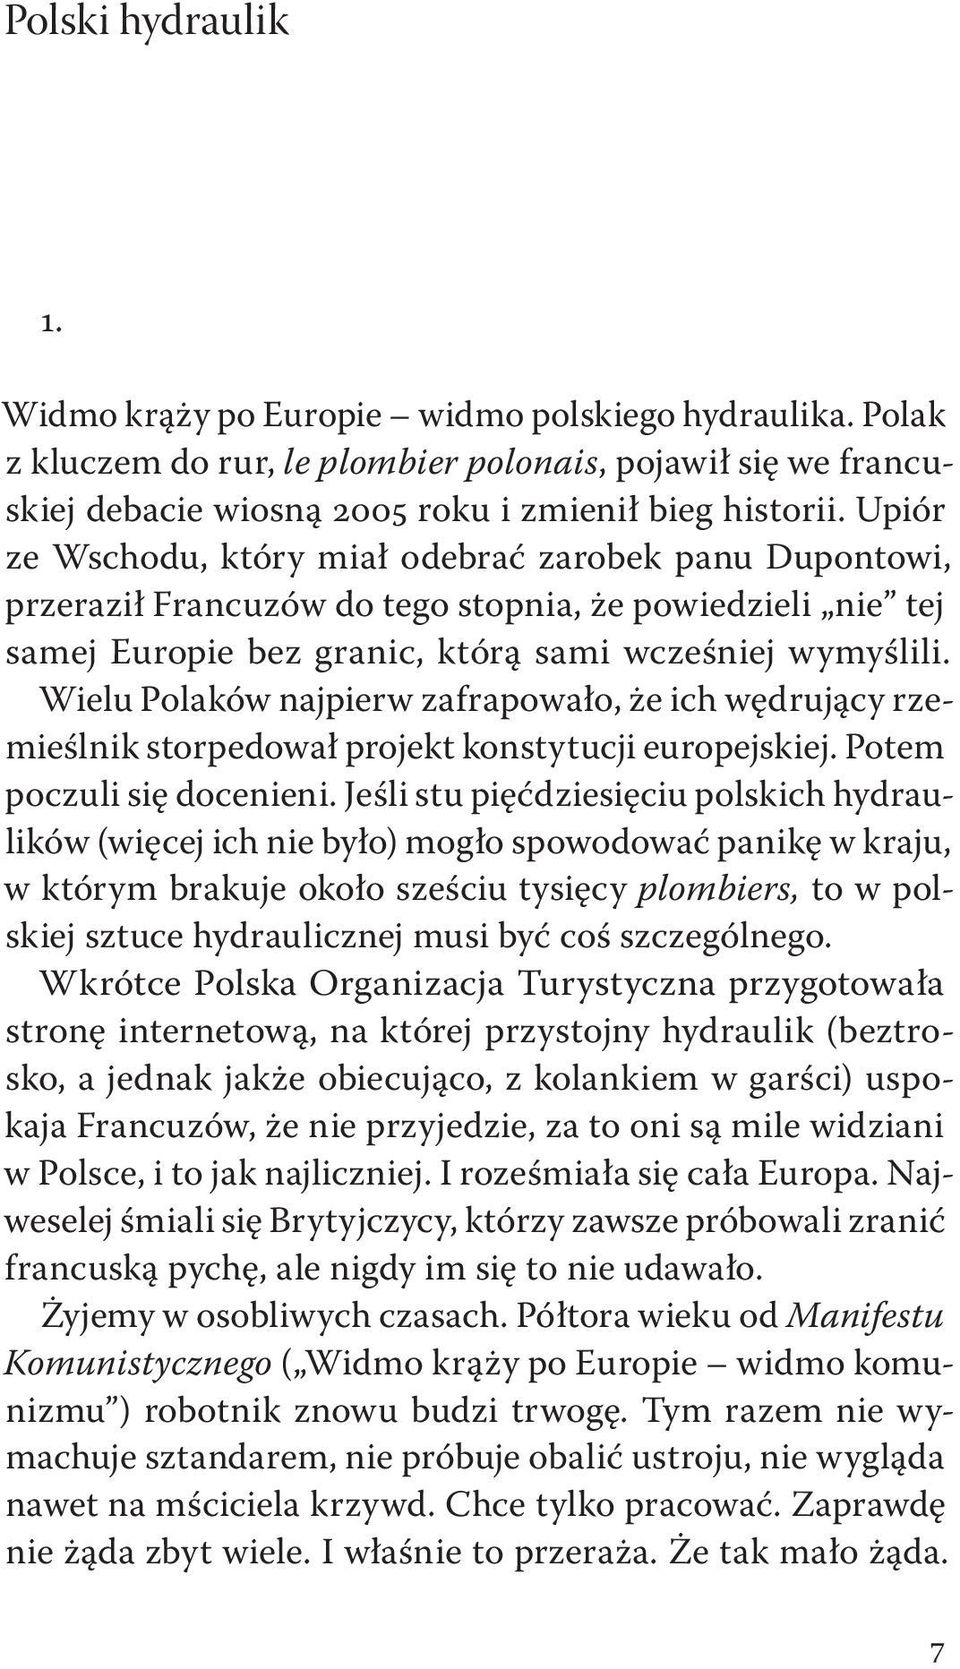 Wielu Polaków najpierw zafrapowało, że ich wędrujący rzemieślnik storpedował projekt konstytucji europejskiej. Potem poczuli się docenieni.